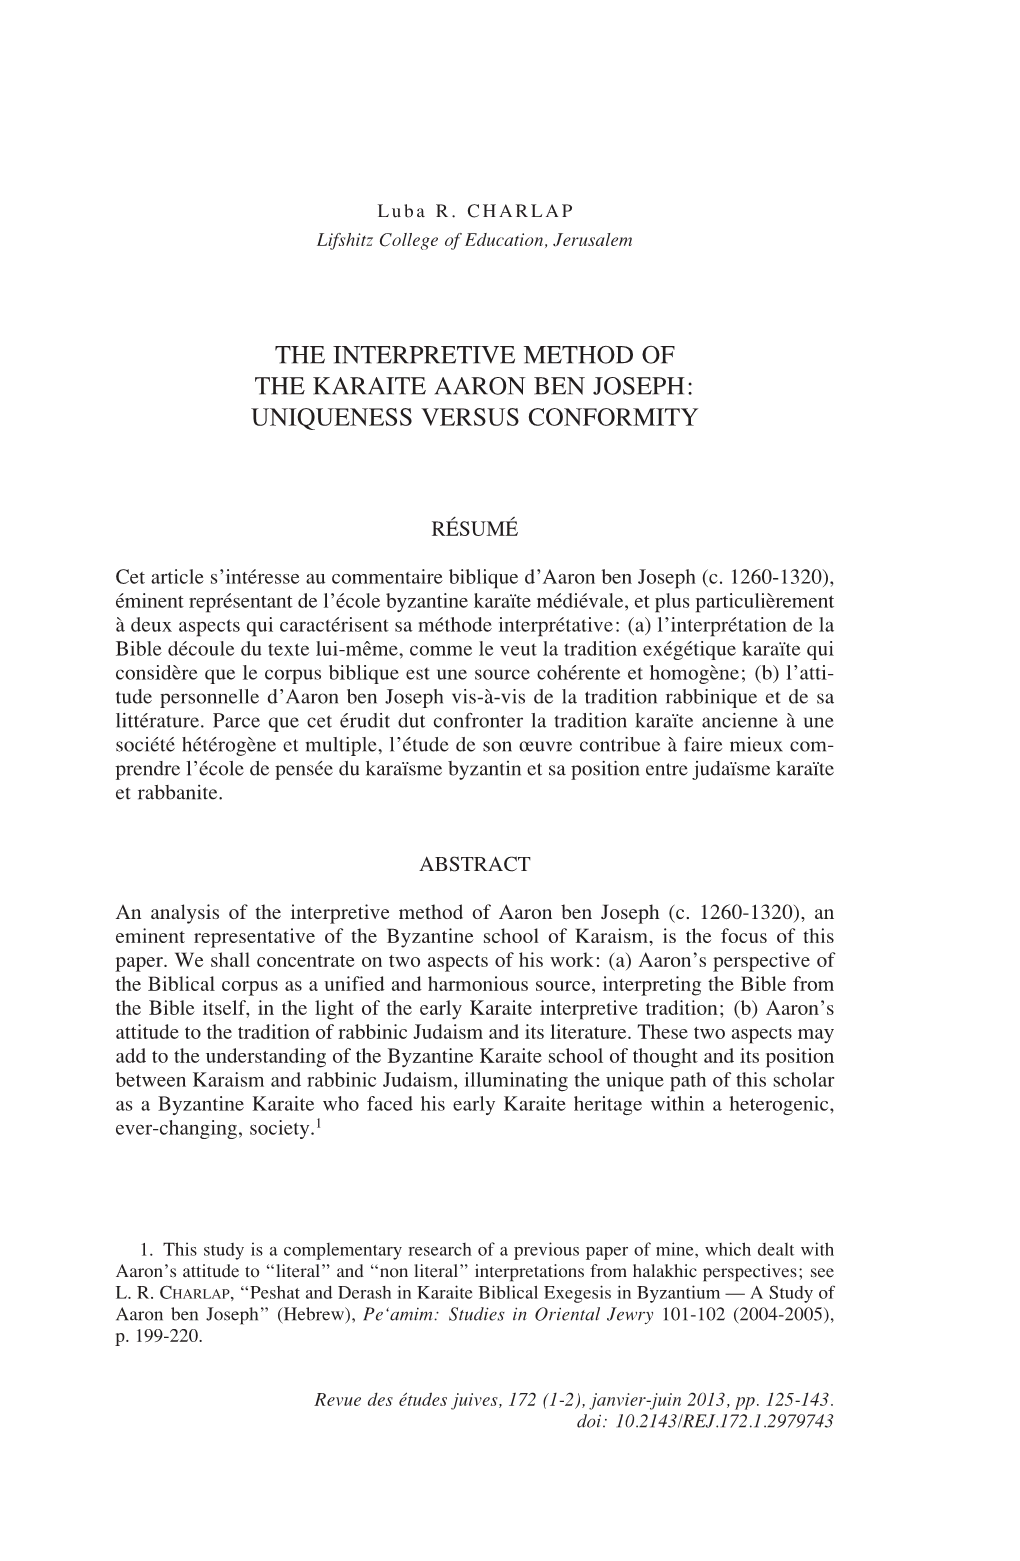 The Interpretive Method of the Karaite Aaron Ben Joseph: Uniqueness Versus Conformity